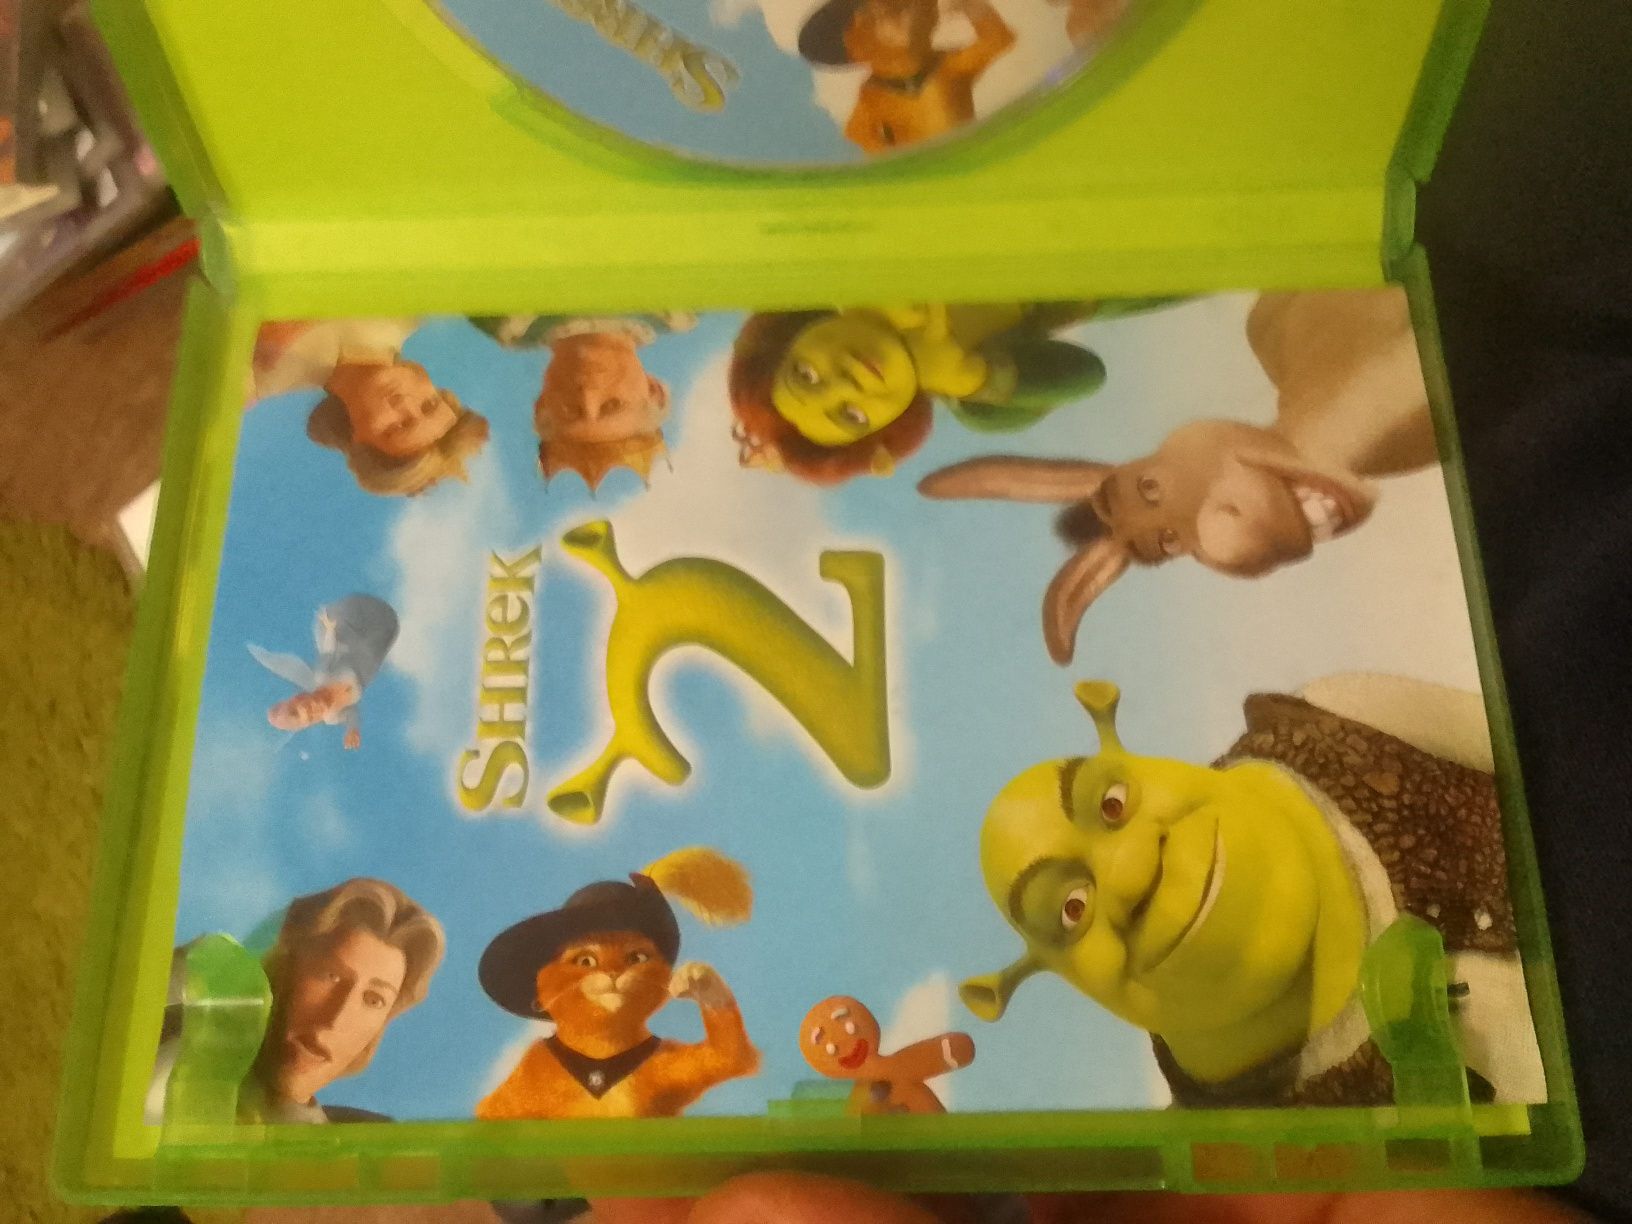 Shrek2 far far away pl dvd